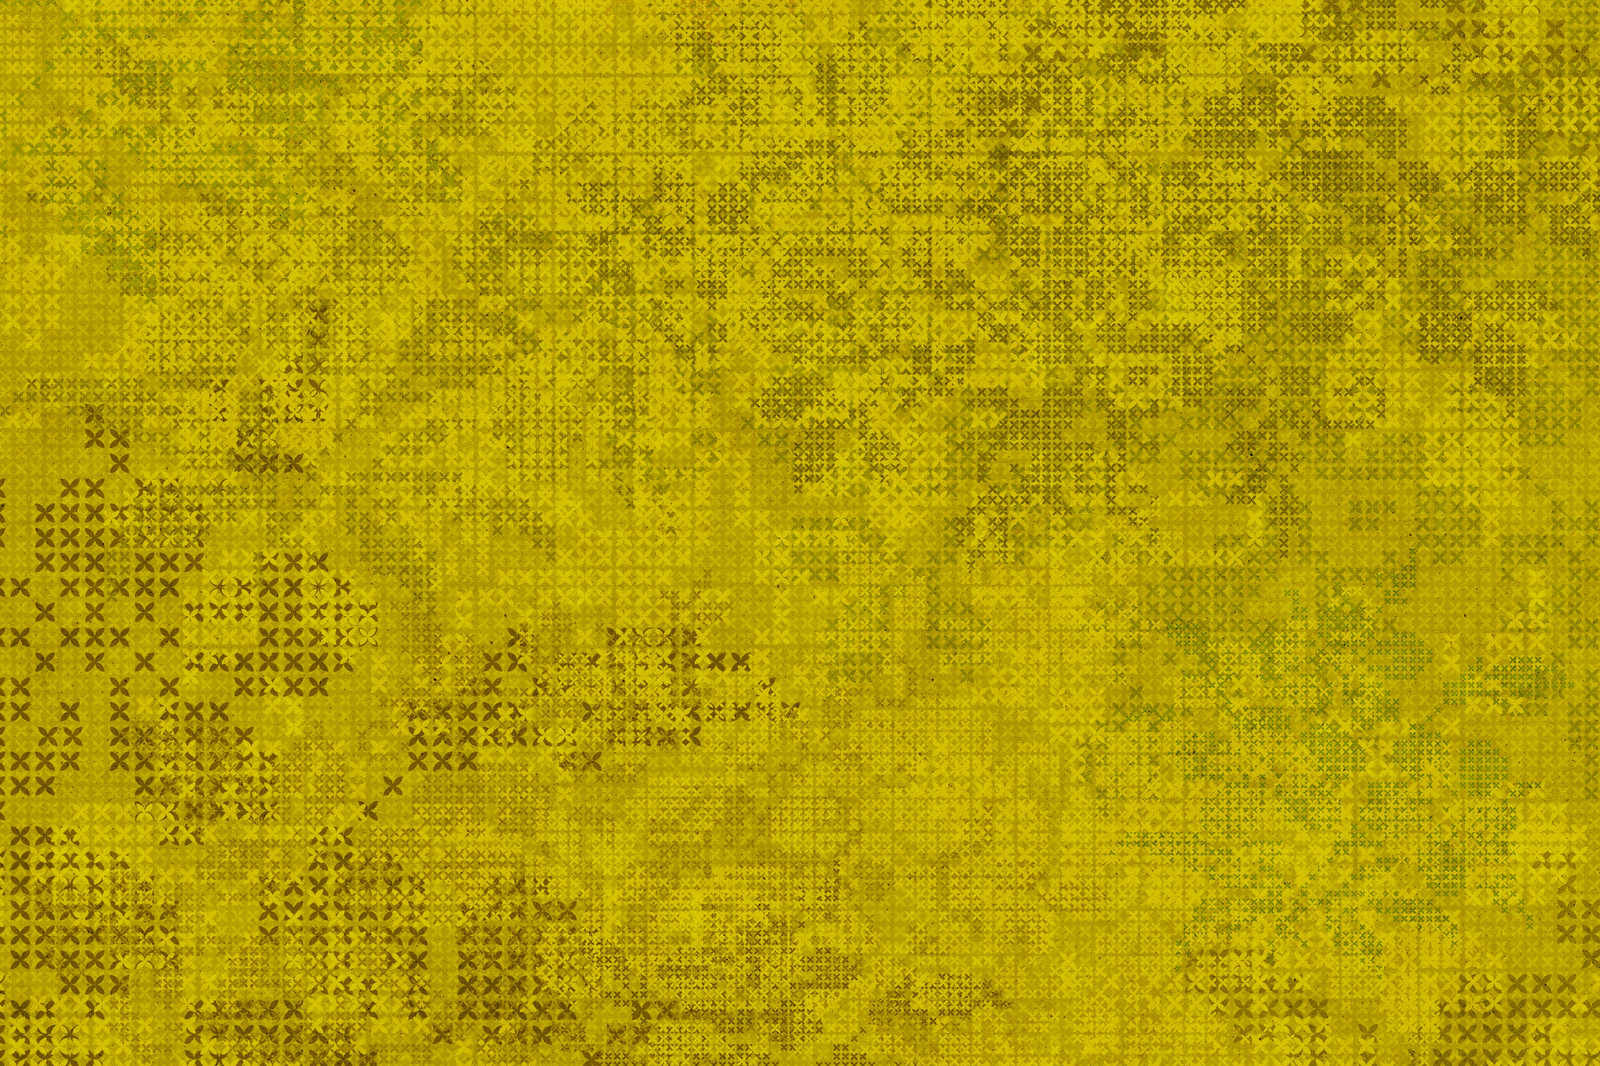             Pixel toile motif point de croix - 0,90 m x 0,60 m
        